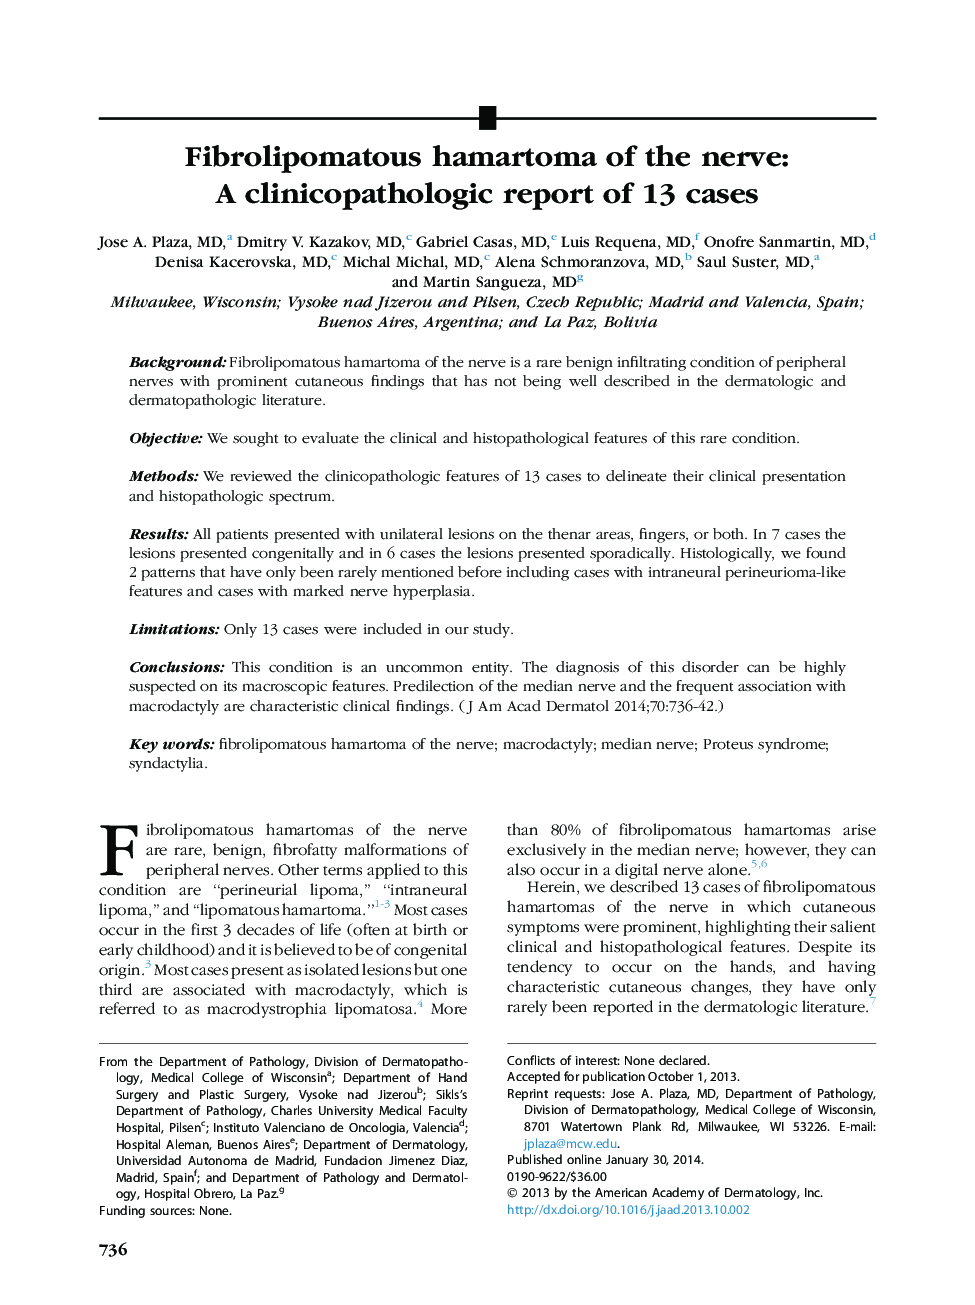 هامارتوما فیبرولیپوماتوز عصب: گزارش کلینیکوپاتولوژیک 13 مورد 